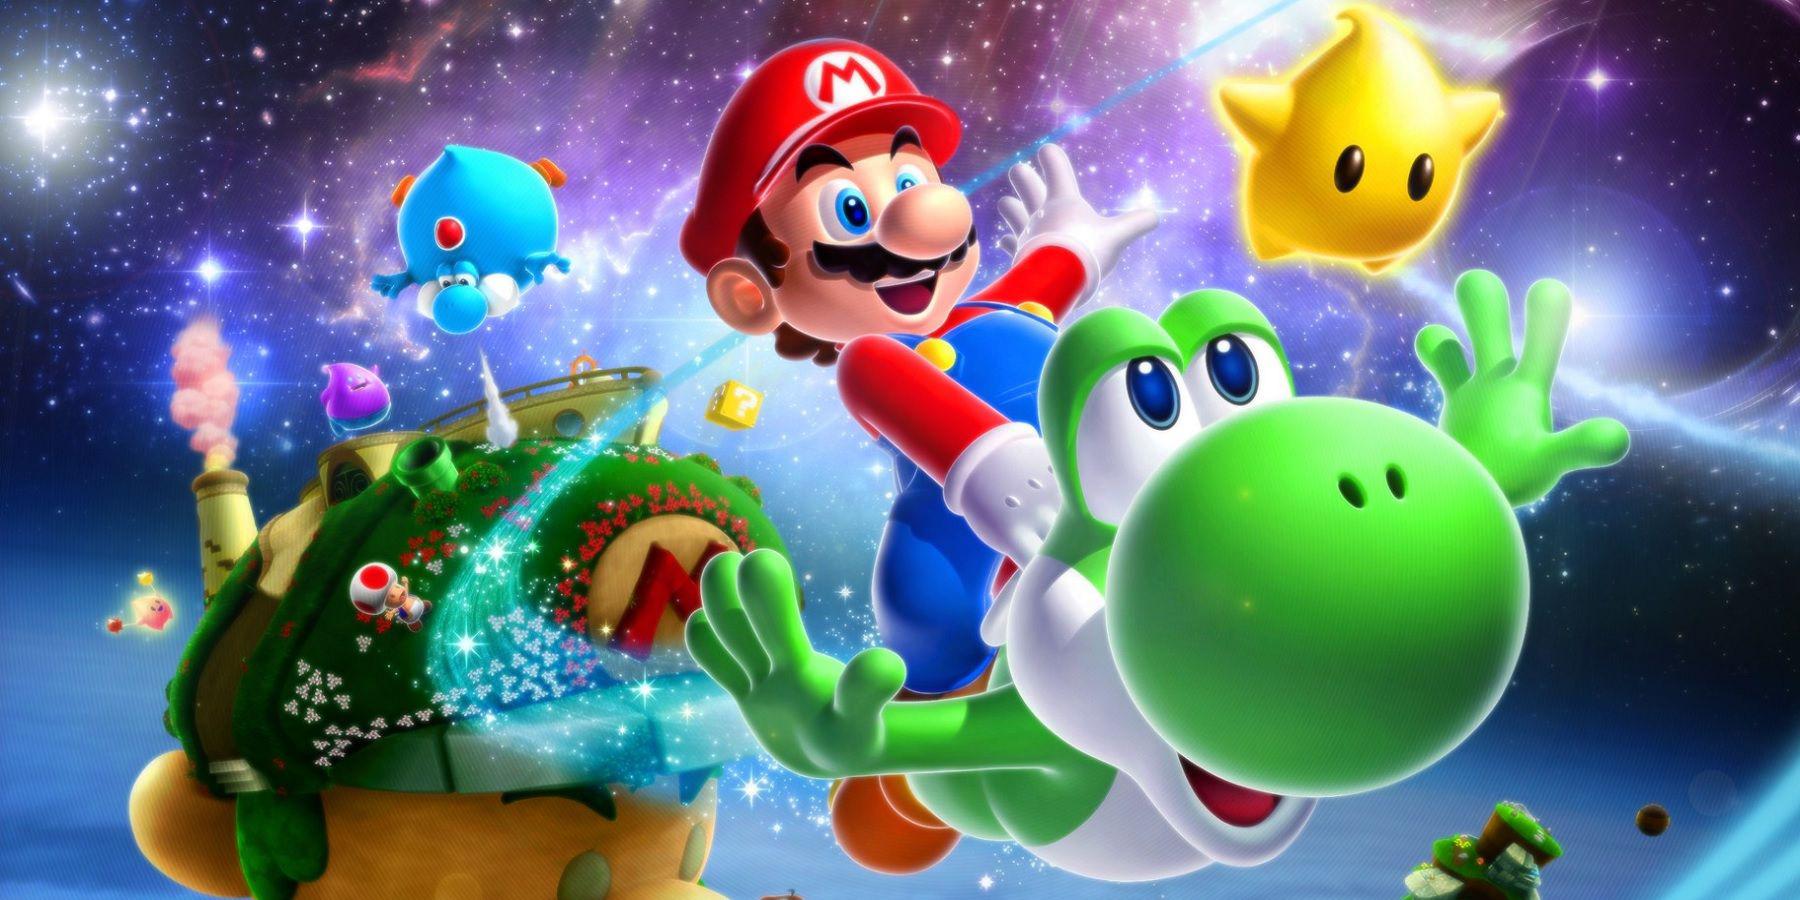 O caso de Mario + Rabbids Sparks of Hope DLC para trazer de volta os Yoshis